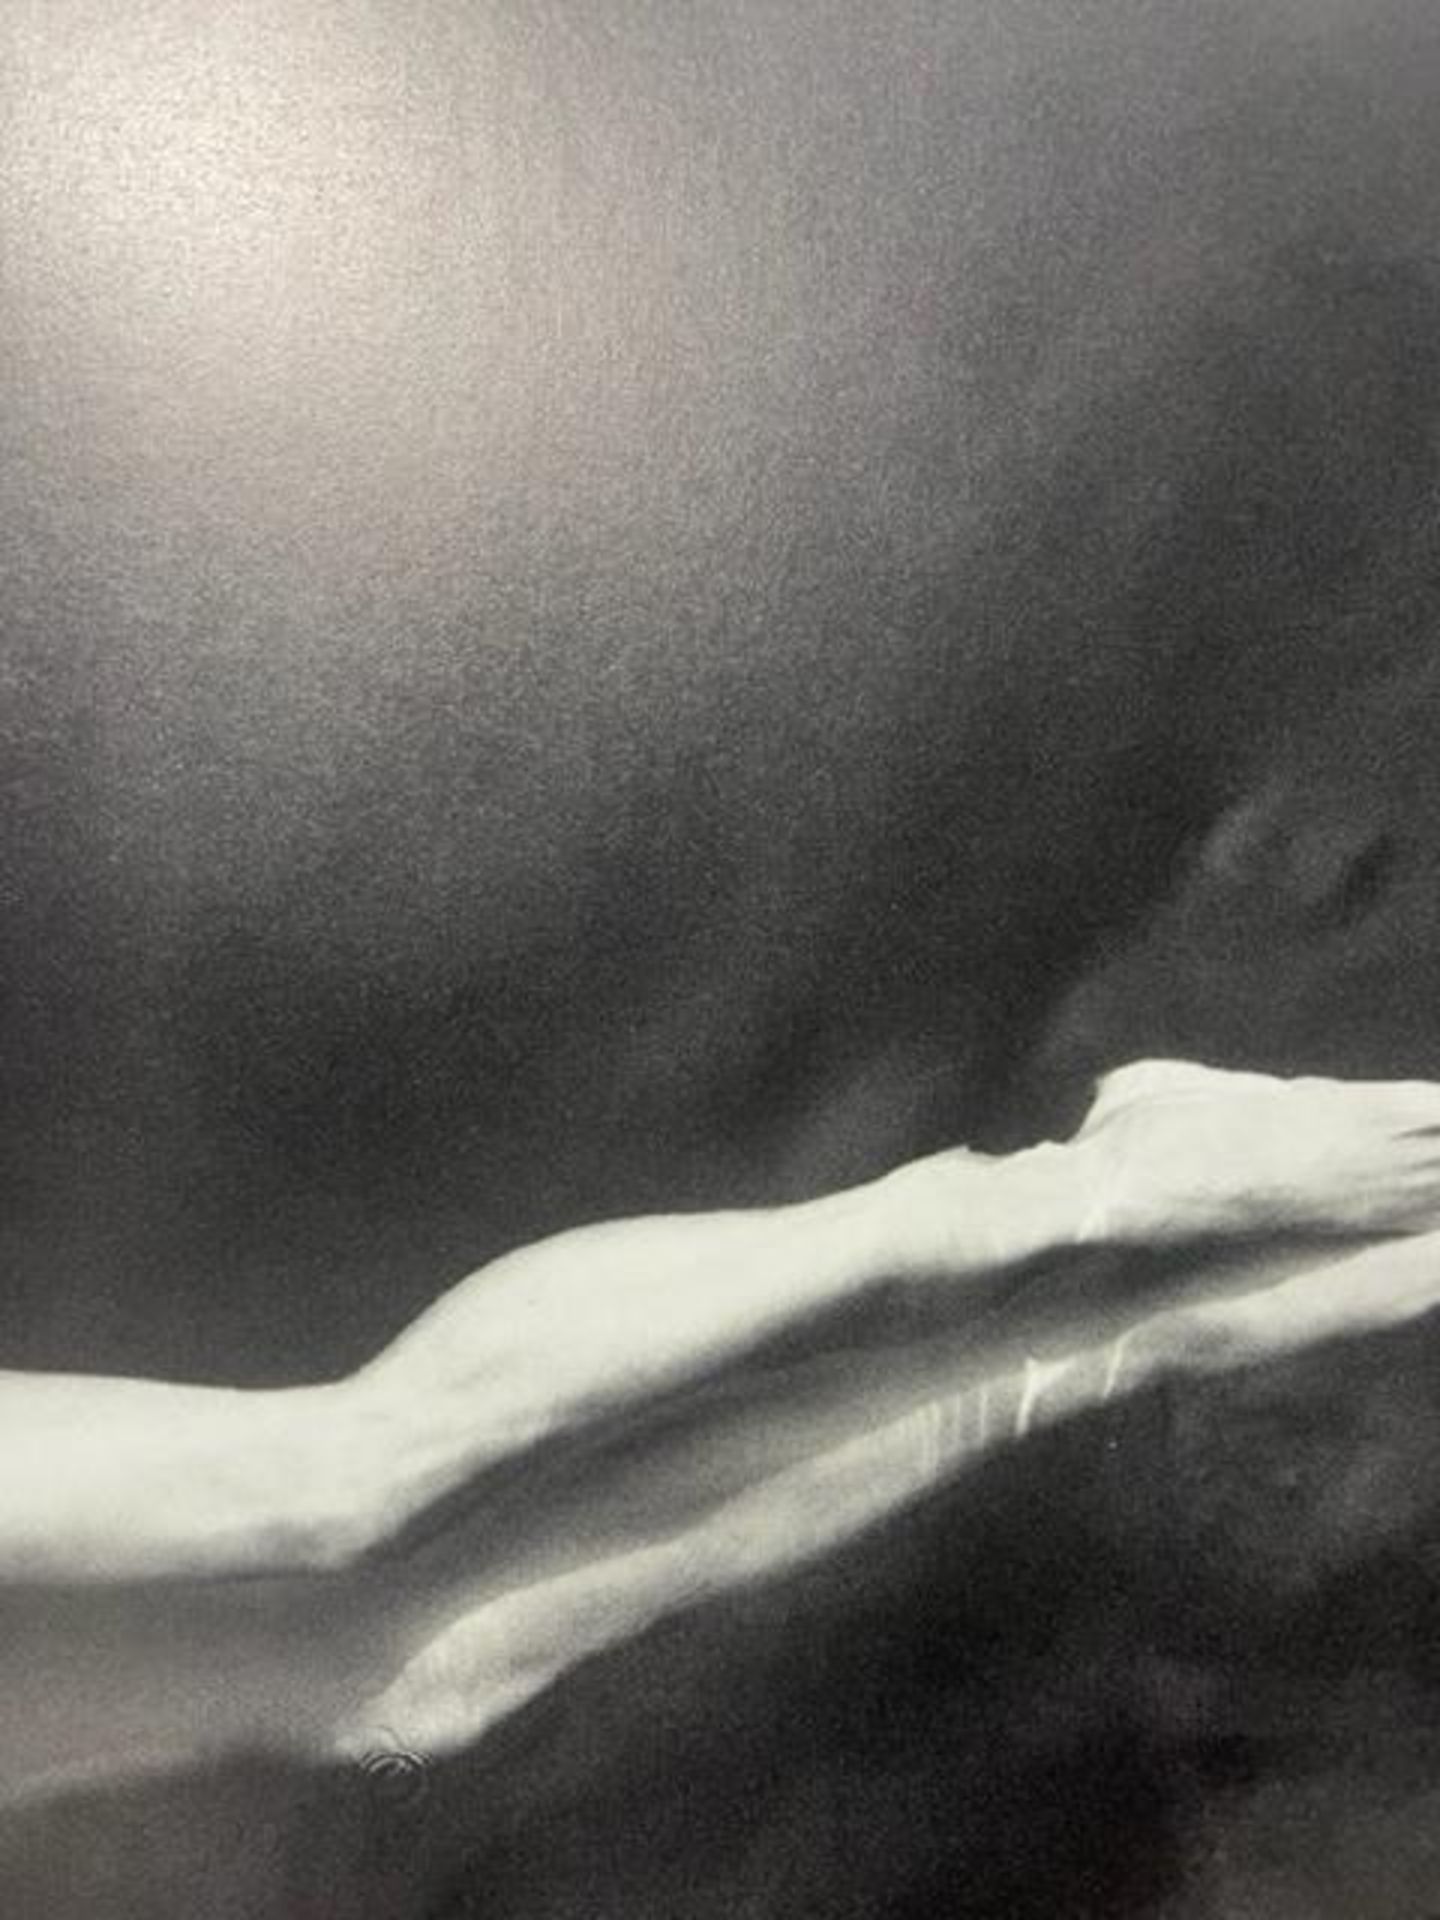 Annie Leibovitz "Untitled" Print. - Bild 3 aus 6